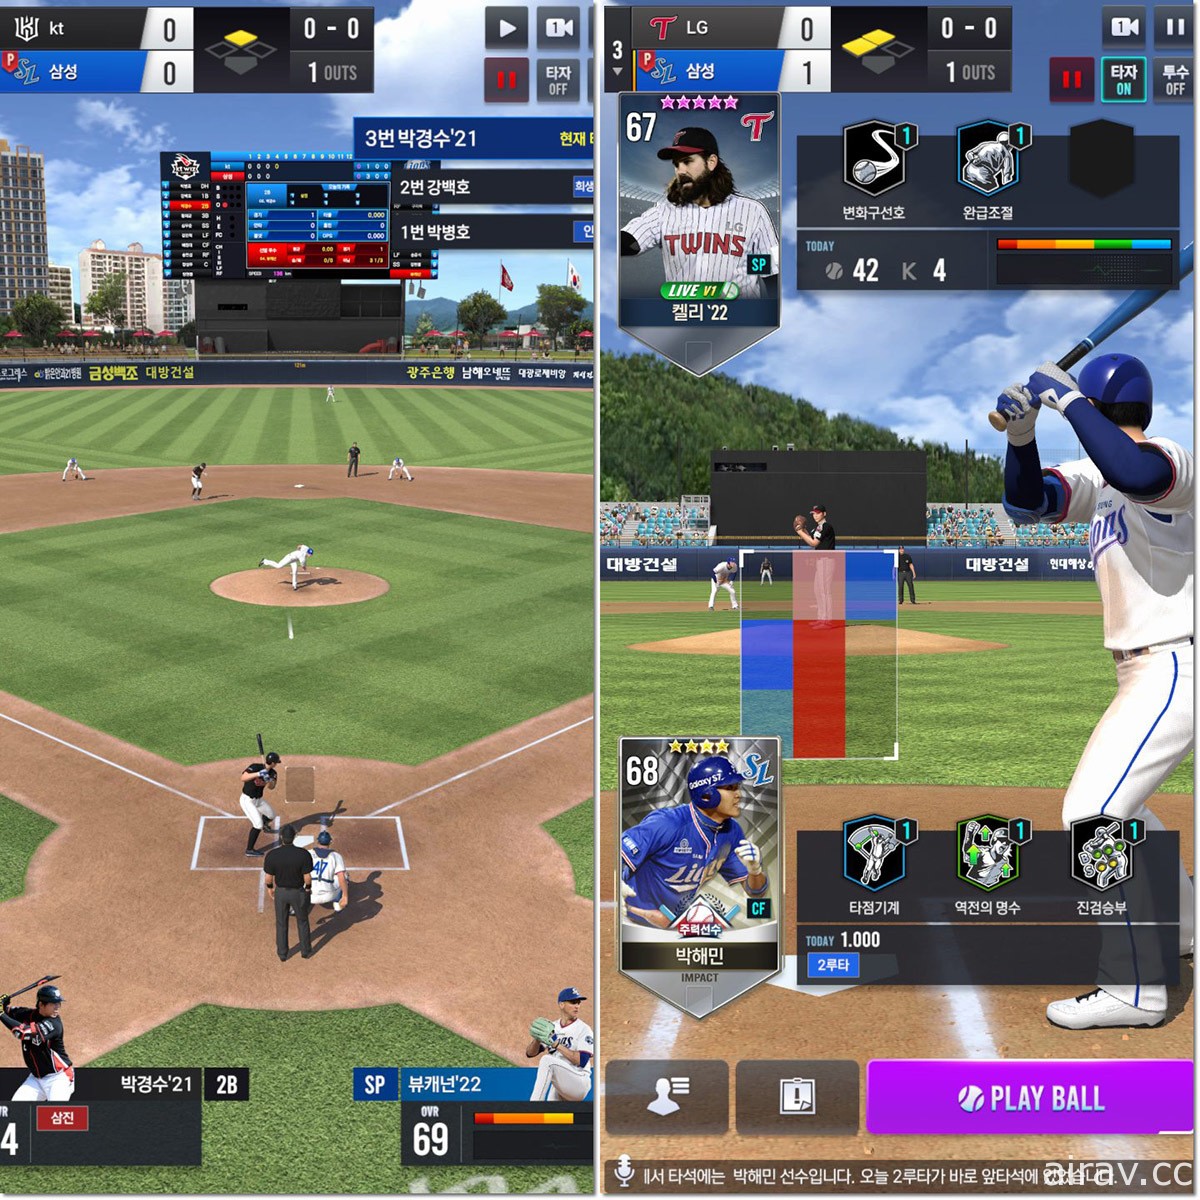 韩国职棒授权新作《Com2us Pro Baseball V22》曝光 释出游戏实机游玩截图